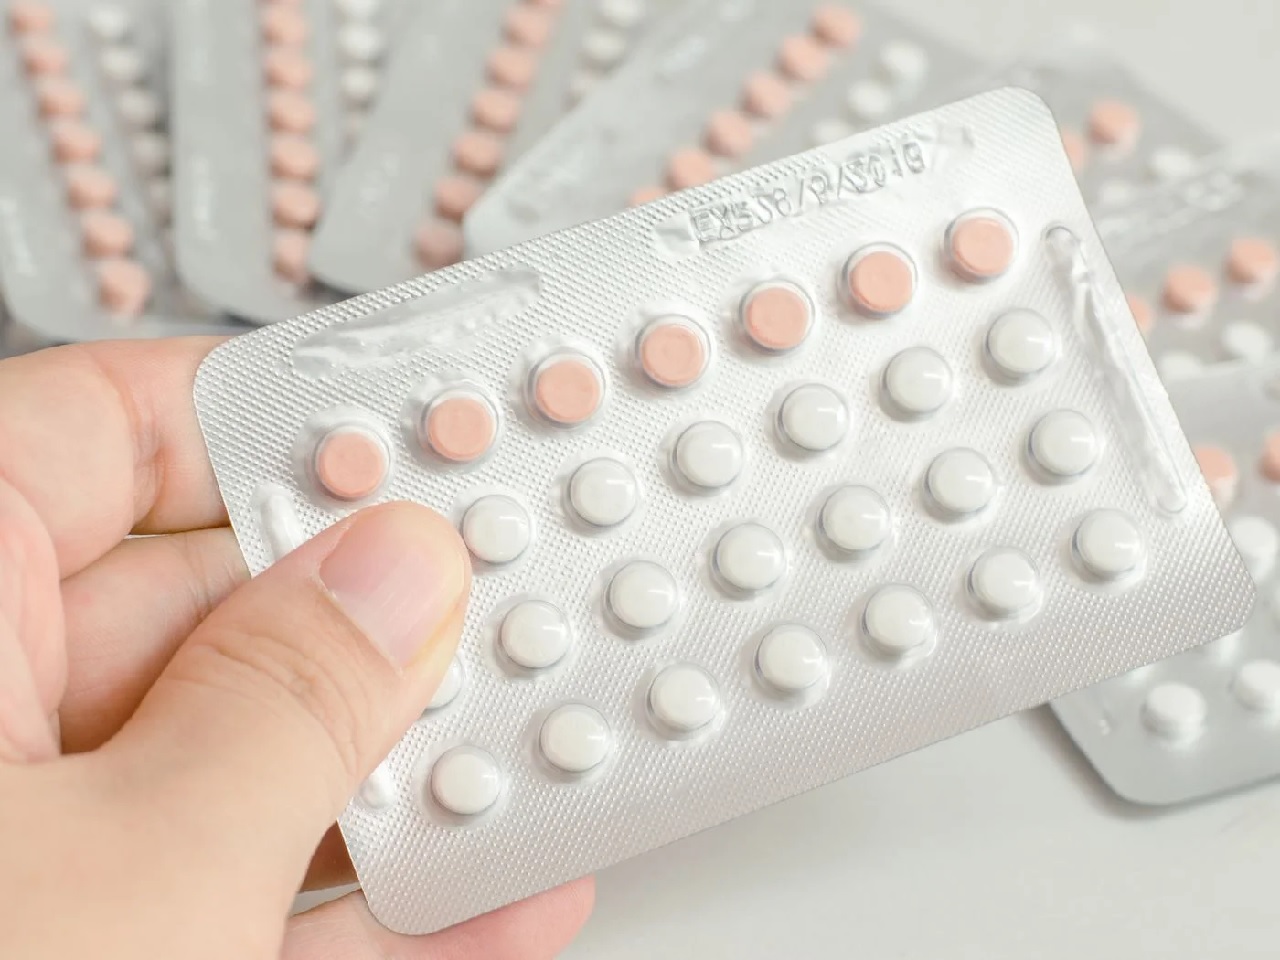 Uống thuốc tránh thai 1 tháng có kinh 3 lần, liệu có ảnh hưởng tiêu cực đến sức khỏe của phụ nữ không?